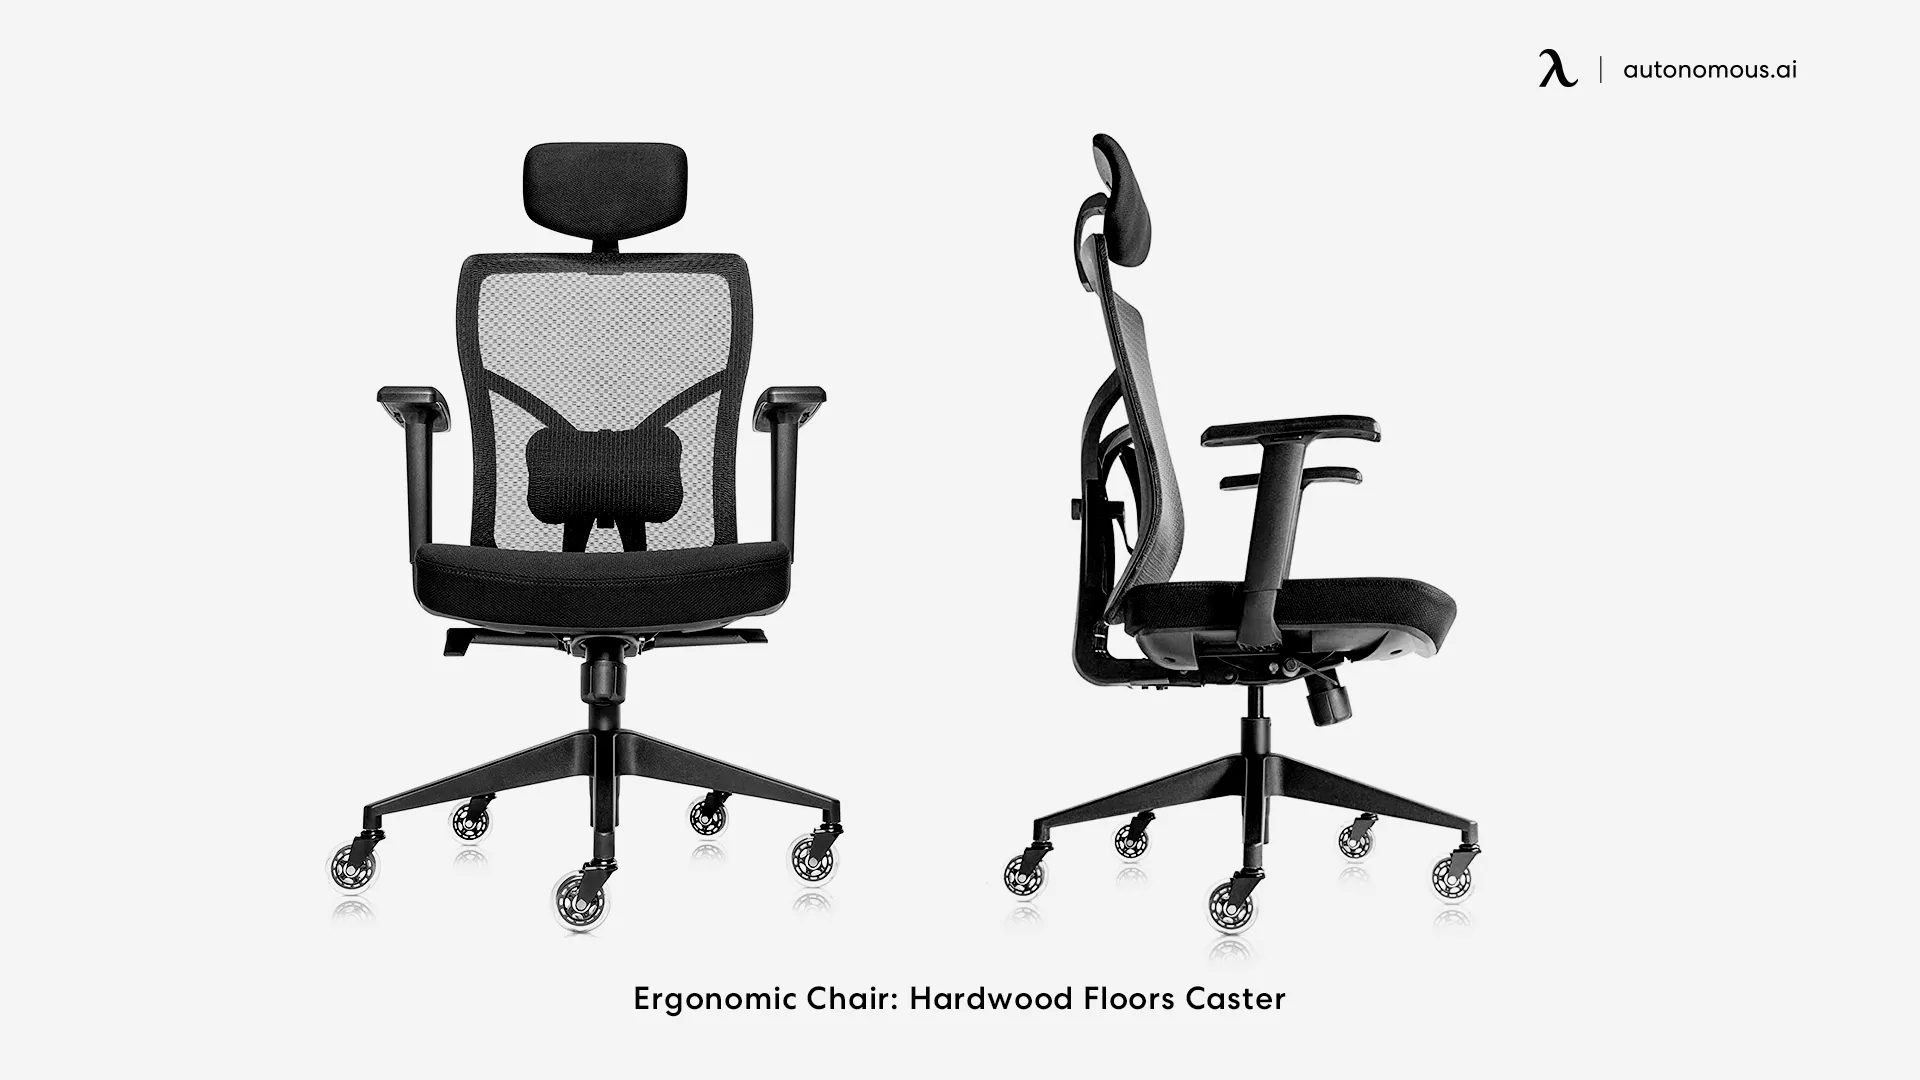 Ergonomic Chair: Hardwood Floors Caster